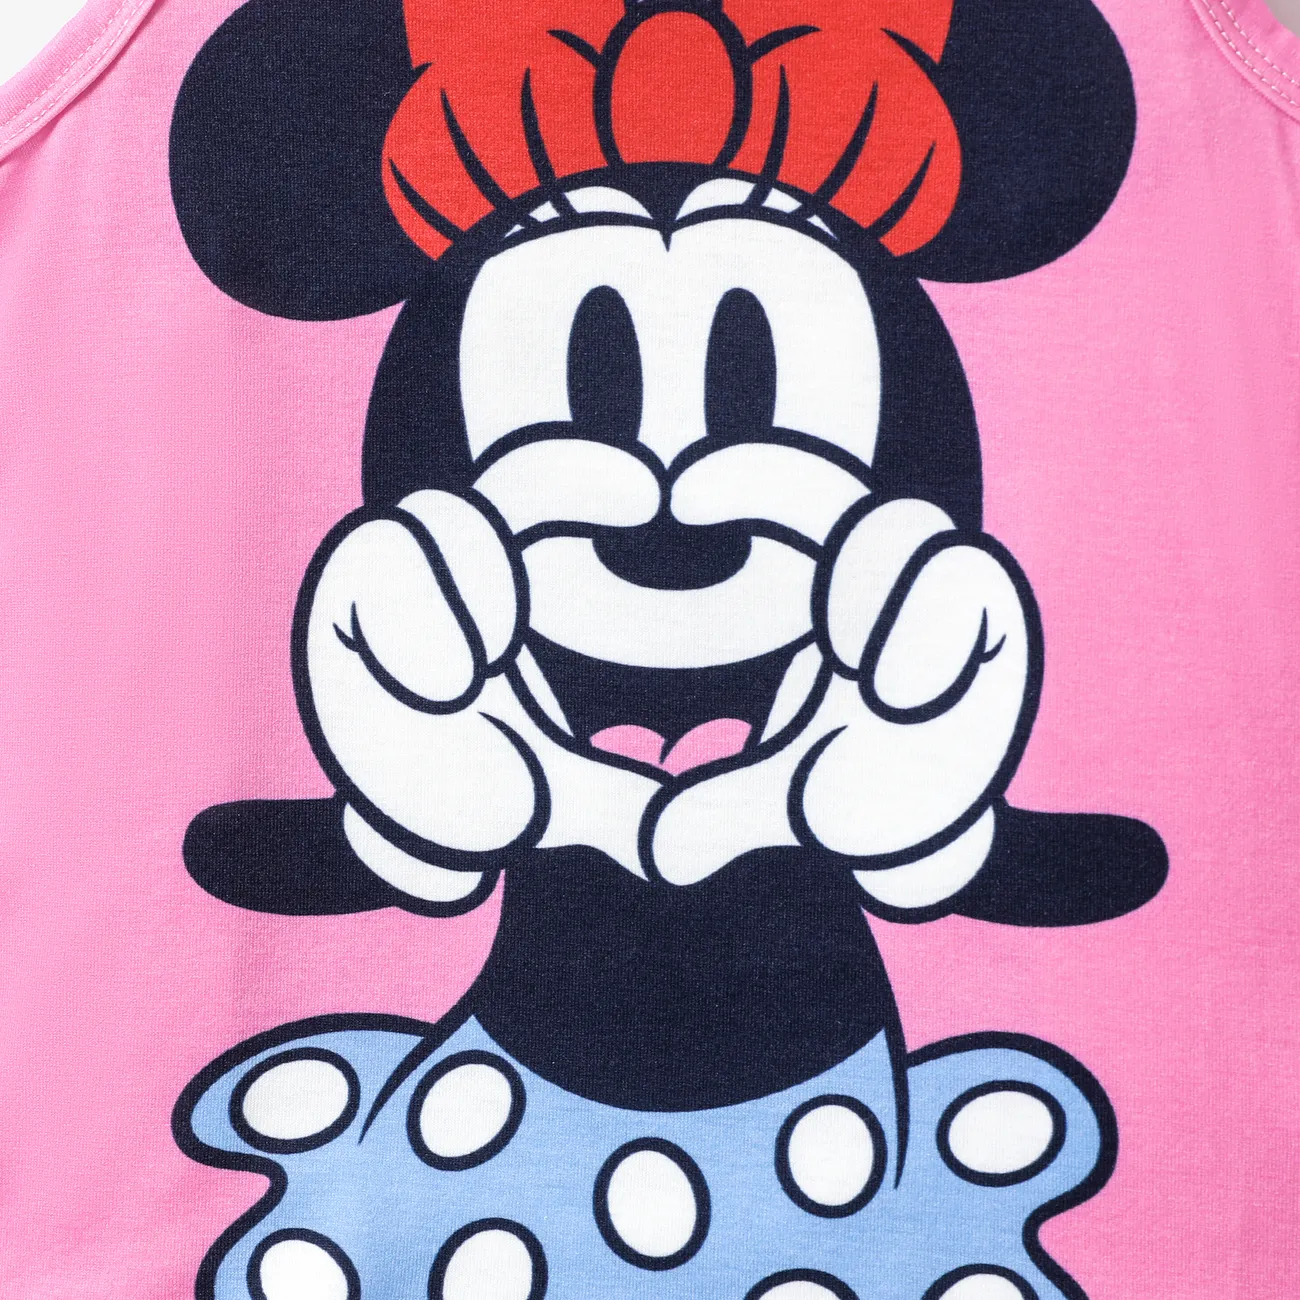 Disney Mickey and Friends 2pcs Toddler Girl/Boy Character Naia™ Print Tank Top with Plaid Shorts Set
 Pink big image 1